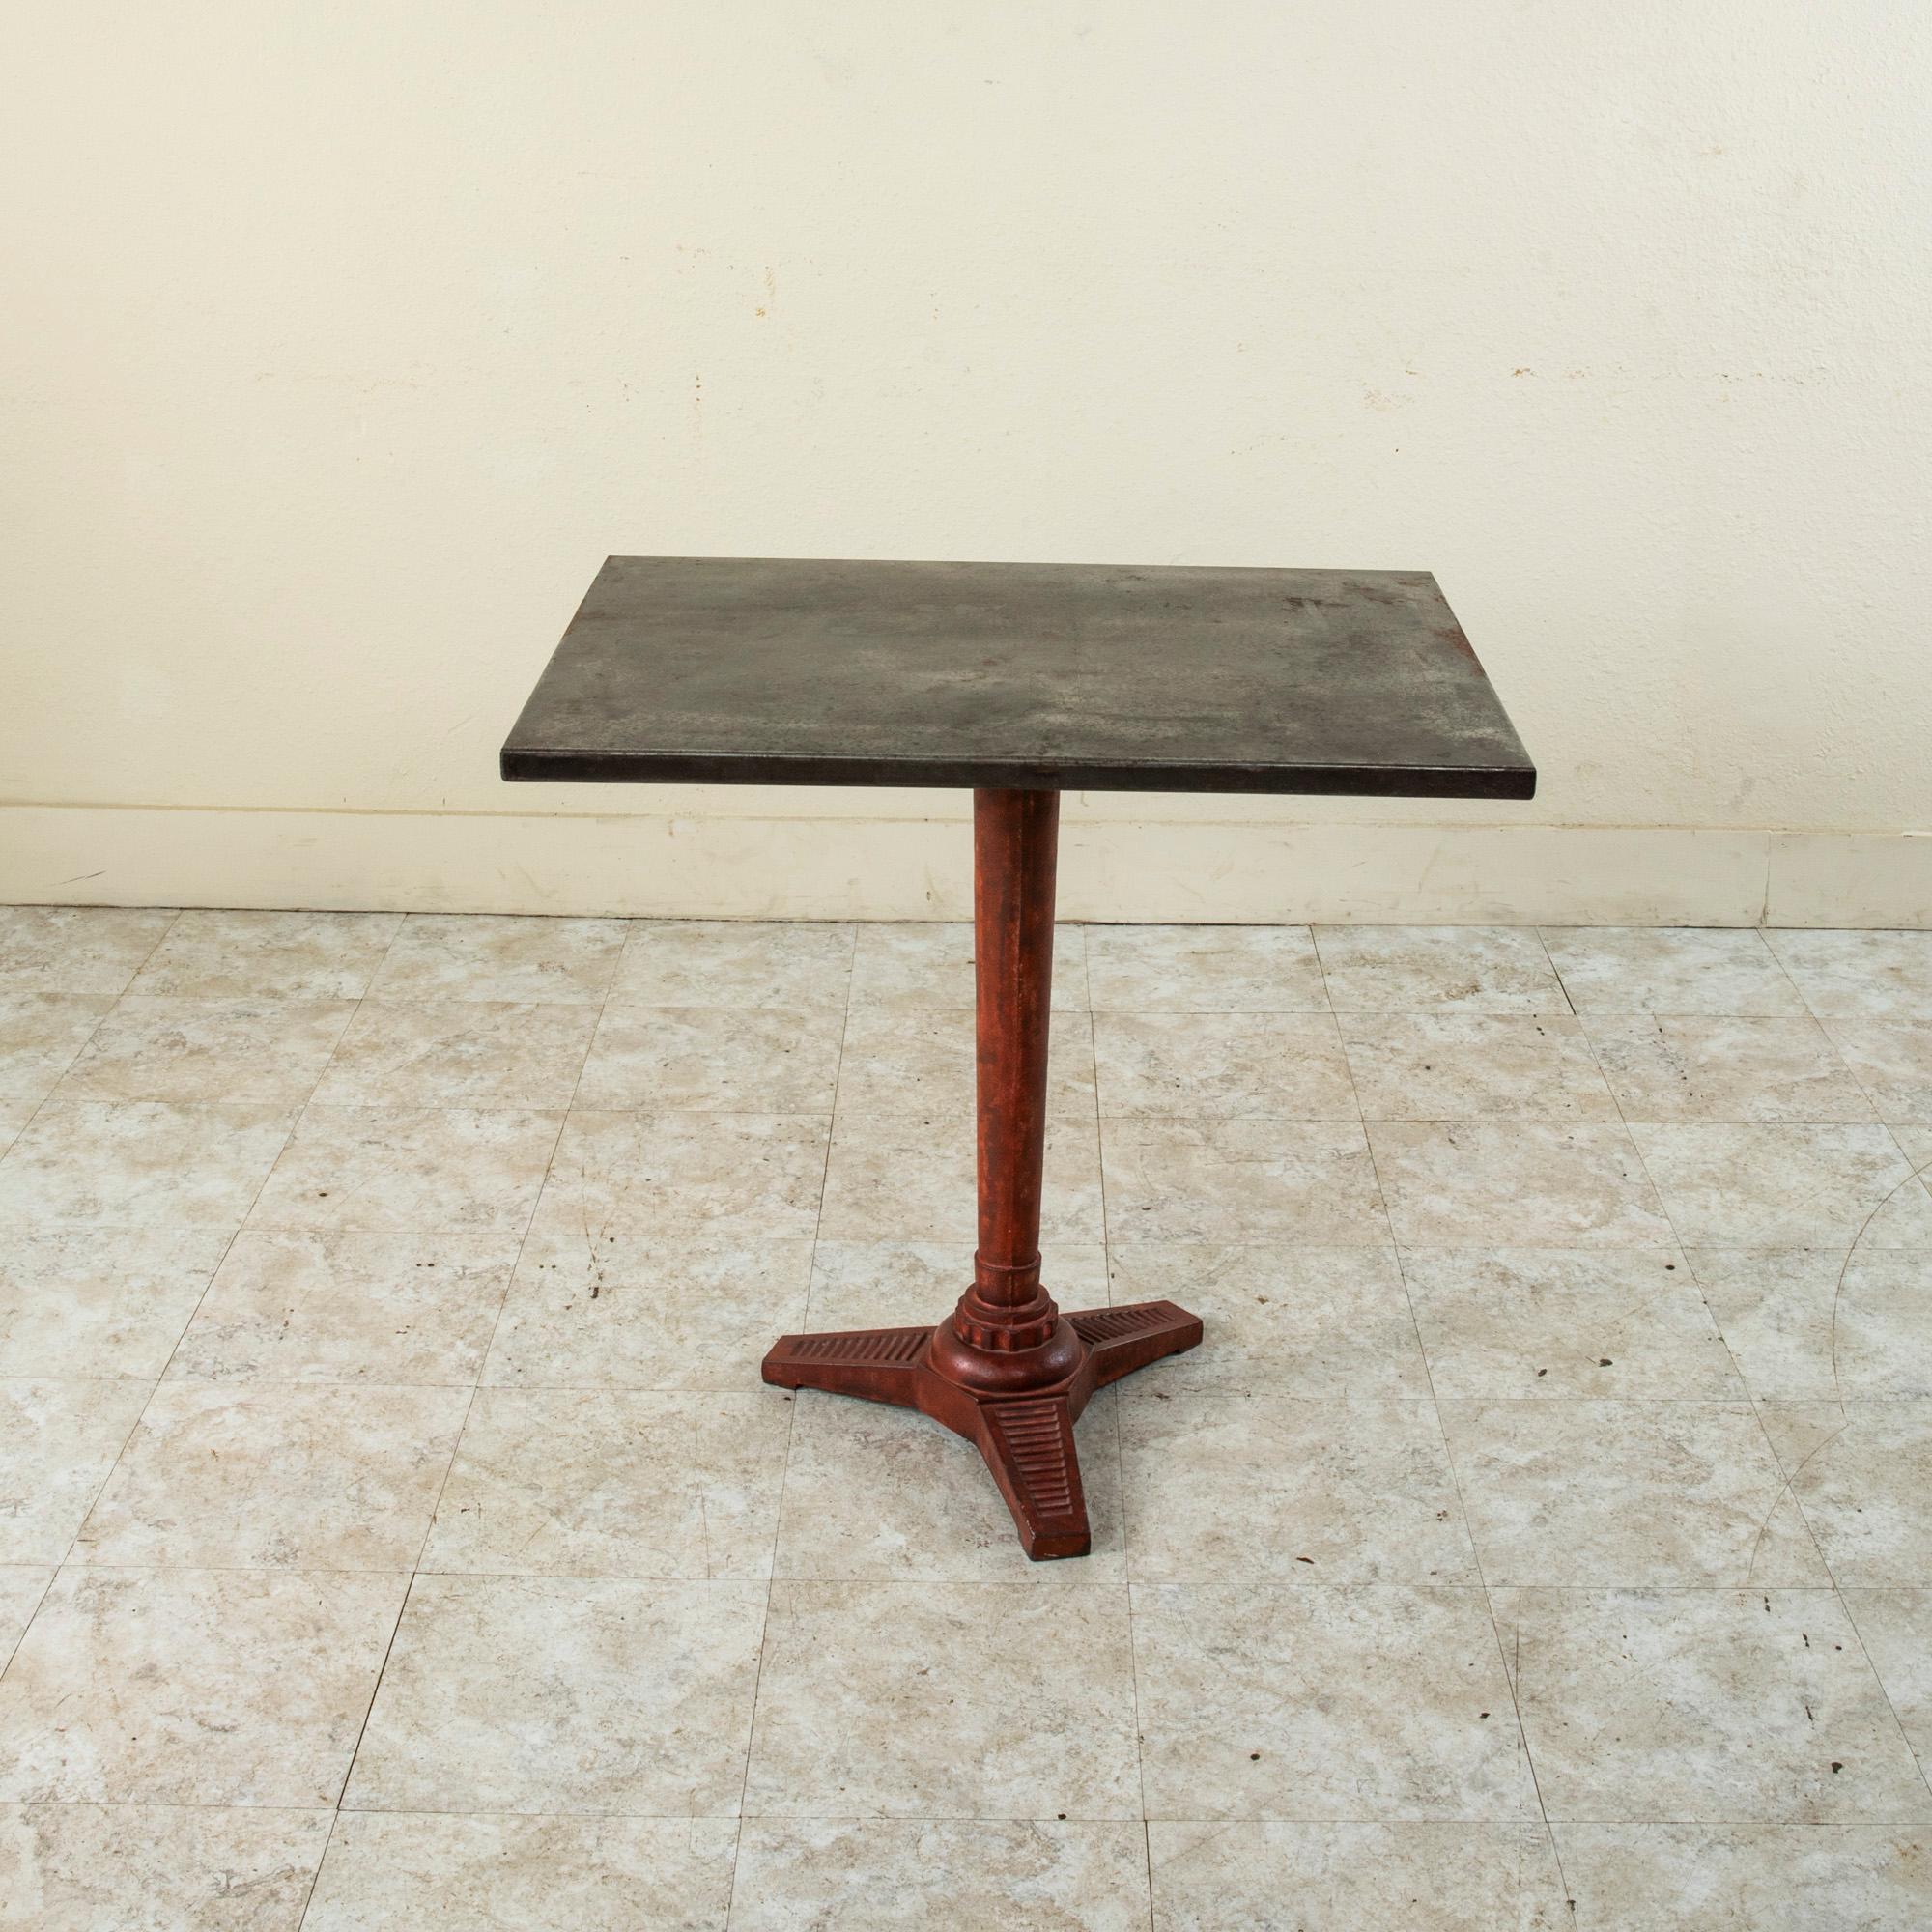 Dieser rechteckige Bistrotisch oder Cafétisch aus dem frühen zwanzigsten Jahrhundert im französischen Art déco-Stil hat eine Metallplatte auf einem Sockel aus Gusseisen. Der Sockel ist rot lackiert und ruht auf dreibeinigen, mit Rillen versehenen